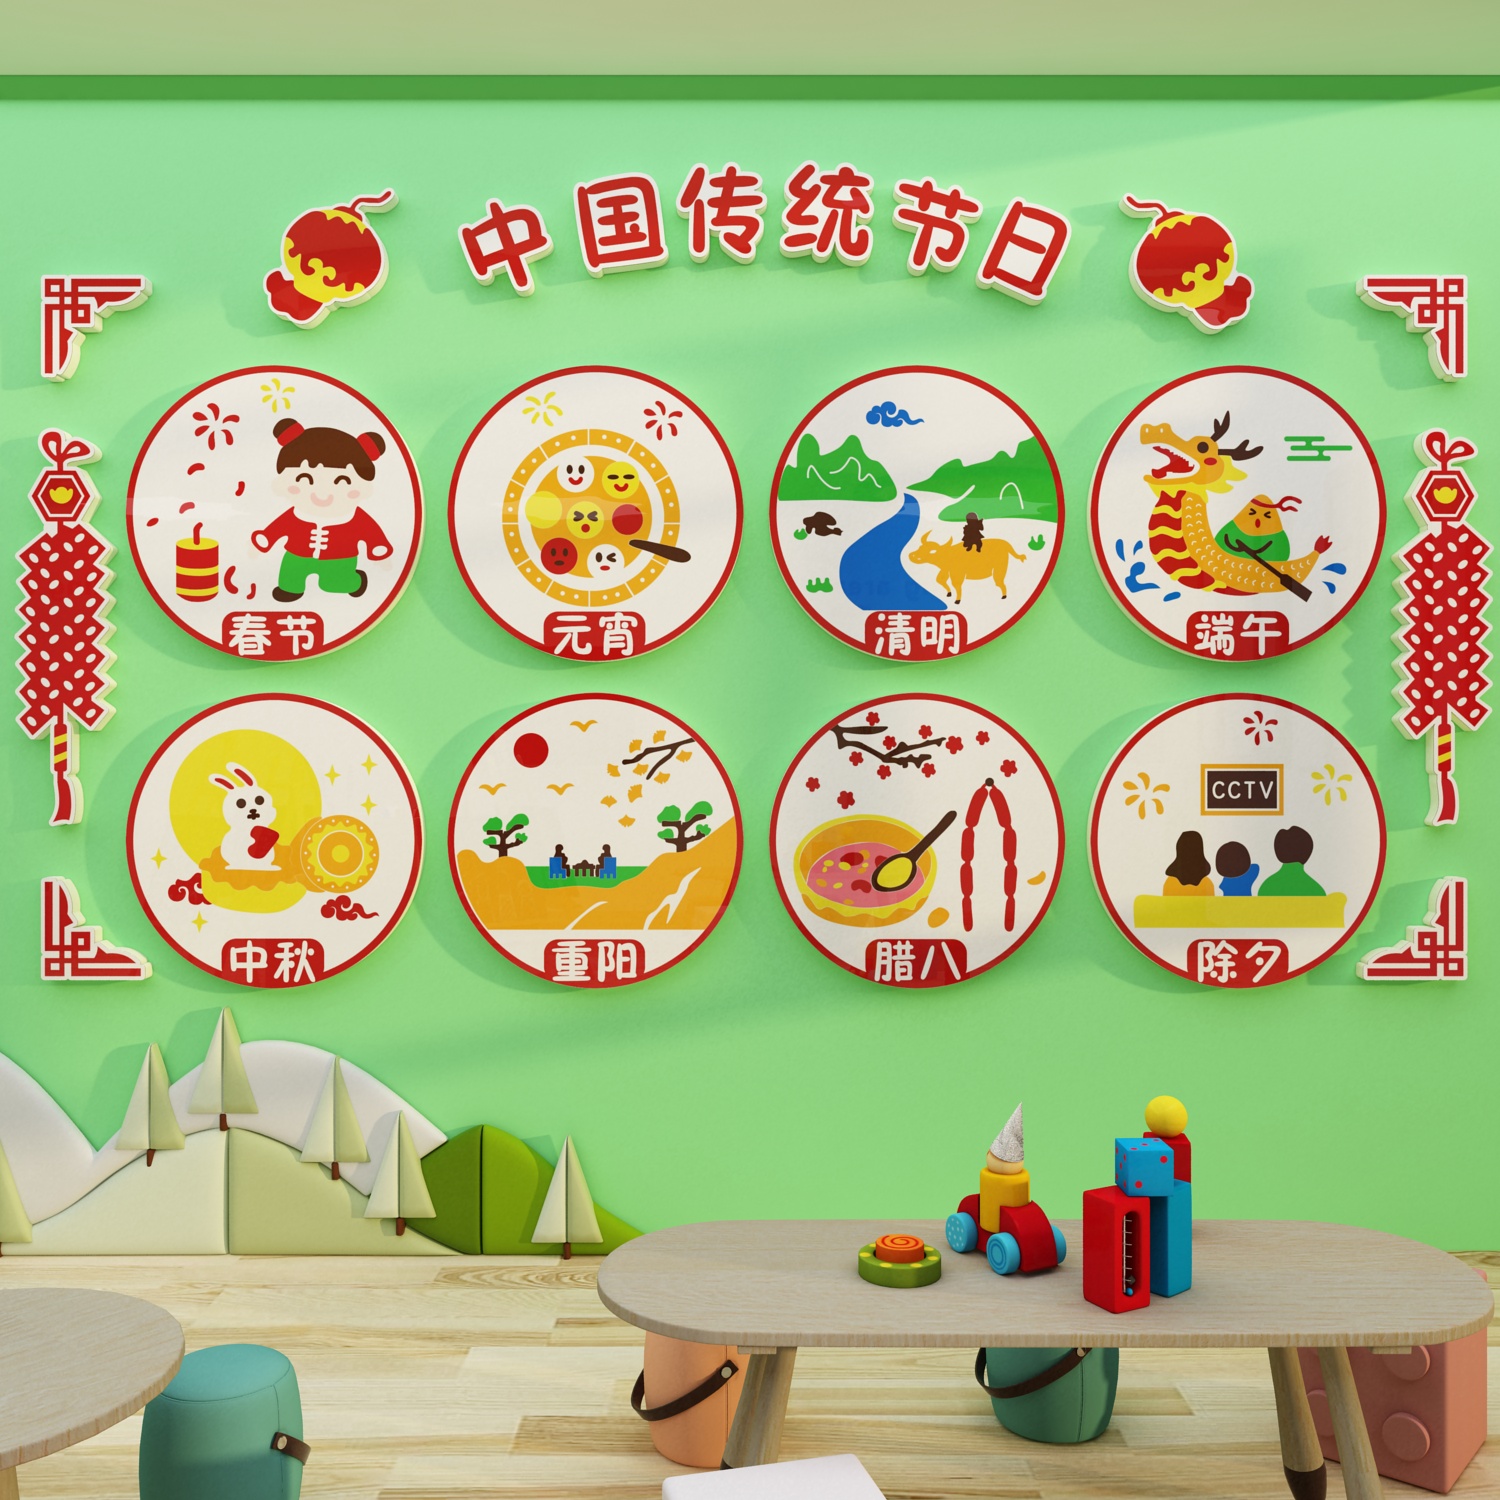 幼儿园传统节日主题文化成品墙面装饰端午环创走廊大厅布置材料画